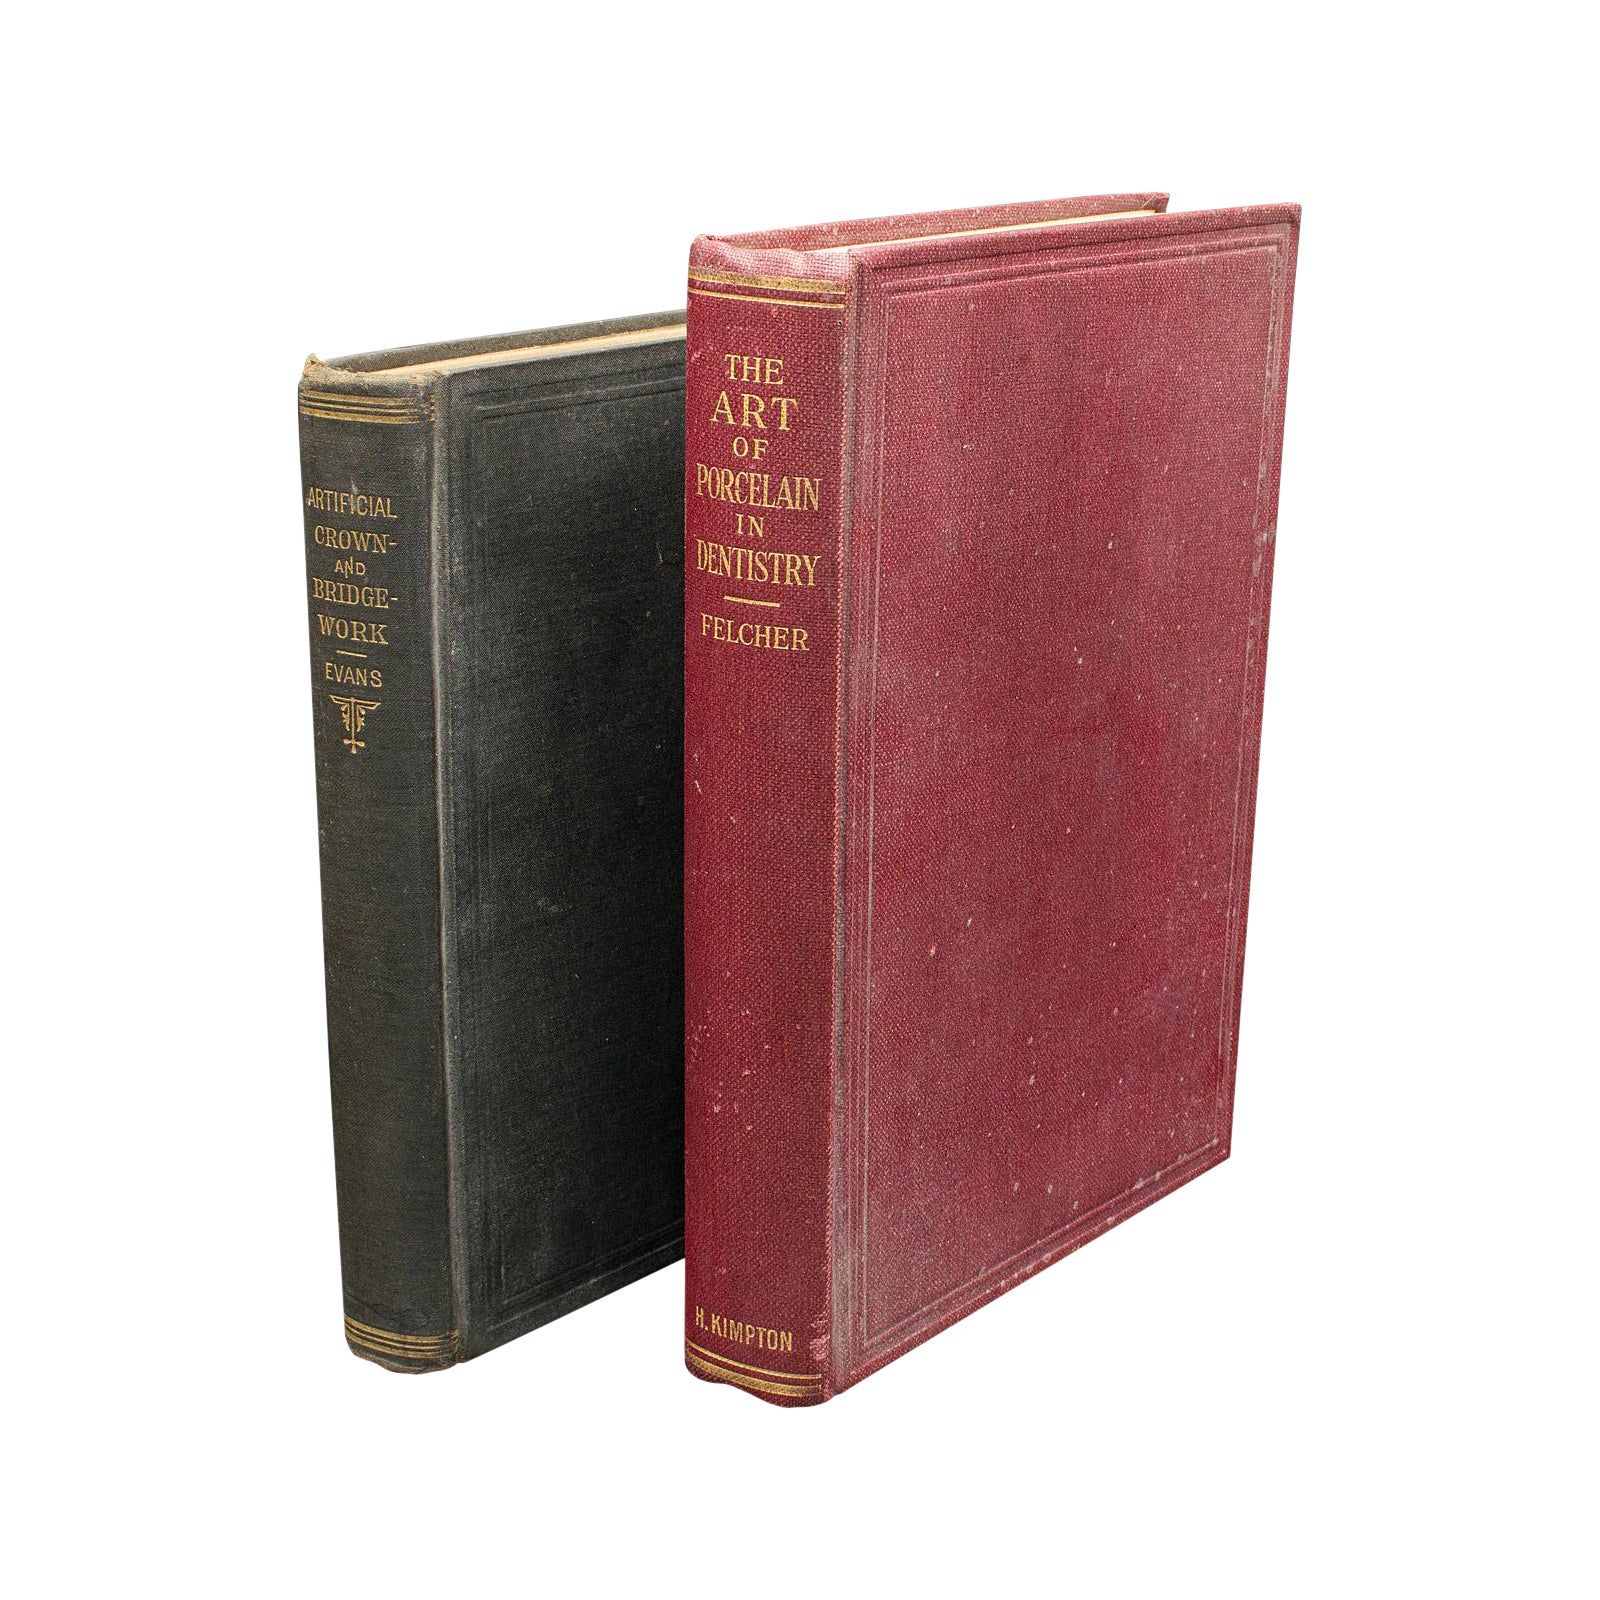 Set von 2 Apothekerbüchern, Englische Sprache, gebundene medizinische Referenz, viktorianisch